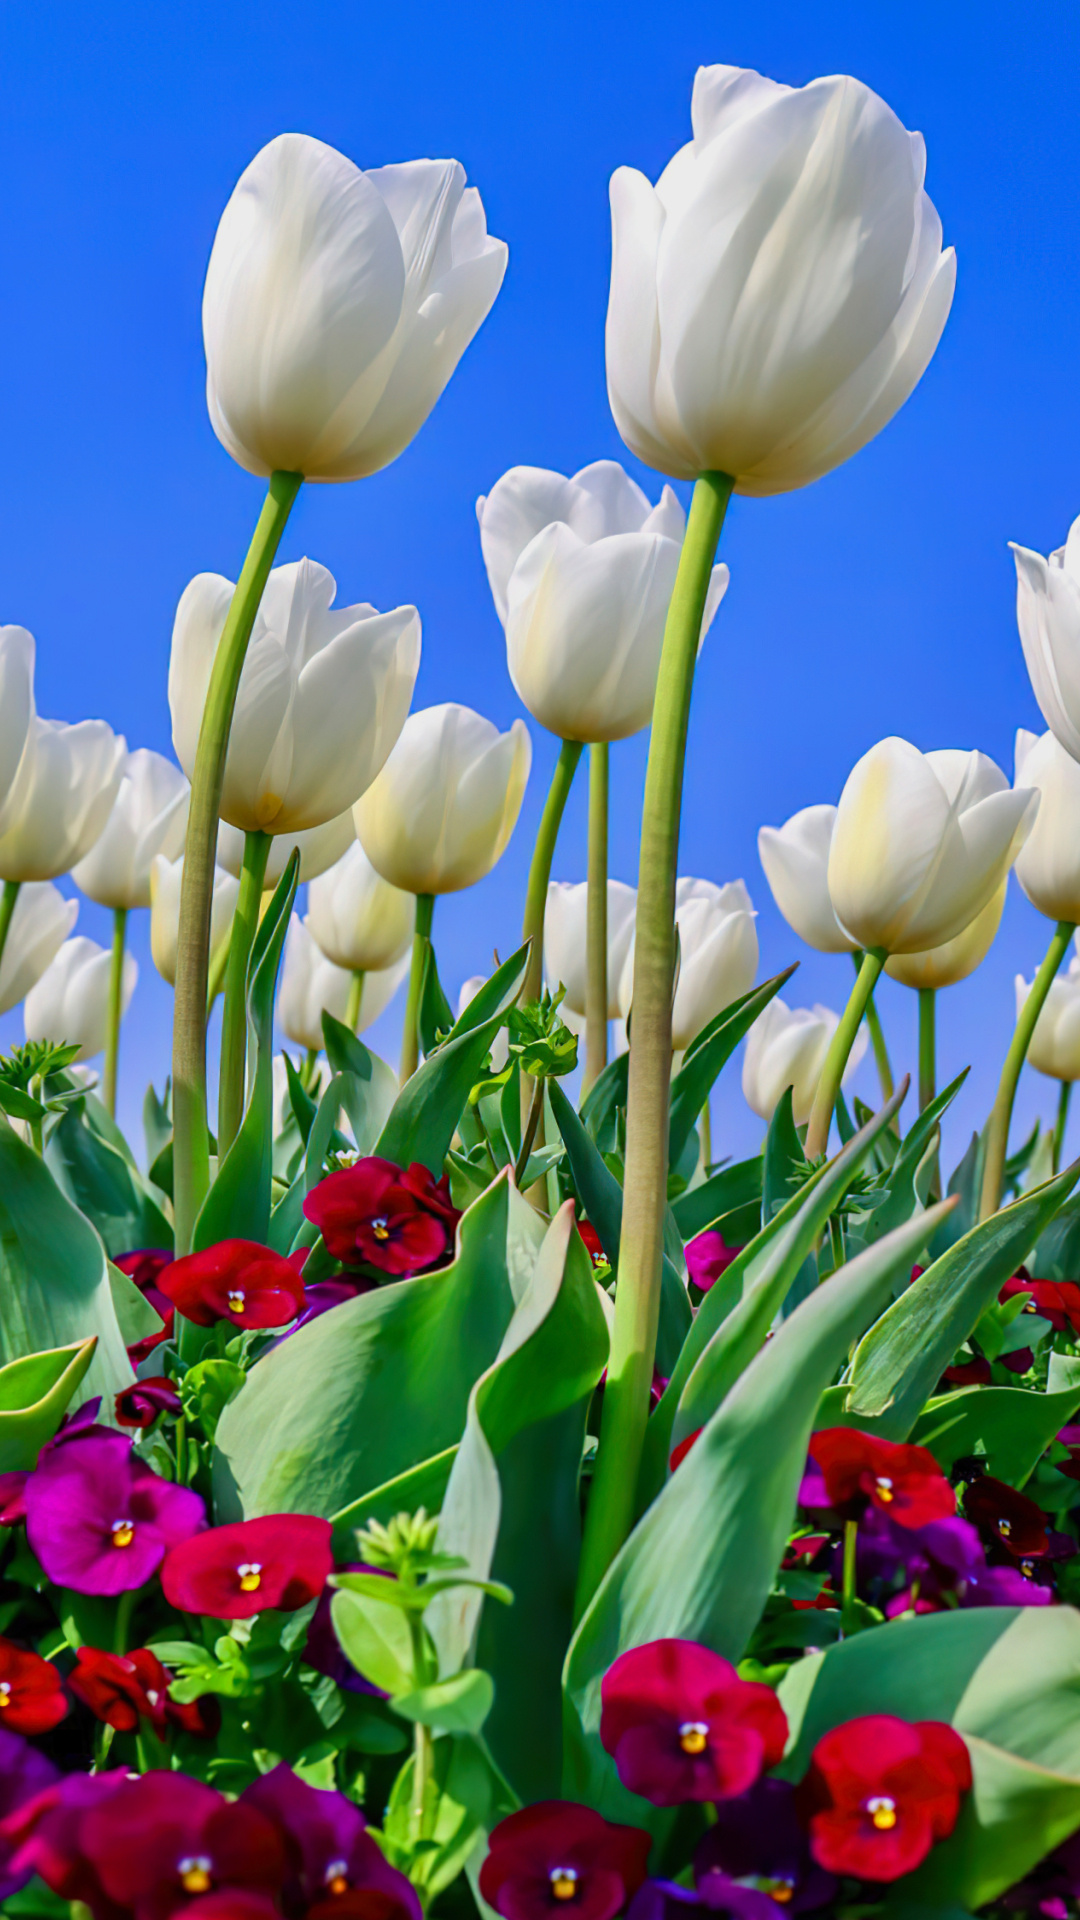 五颜六色的菊花花卉背景品种 库存照片. 图片 包括有 工厂, 一堆, 绿色, 菊花, 新鲜, 照亮, 庭院 - 116314374